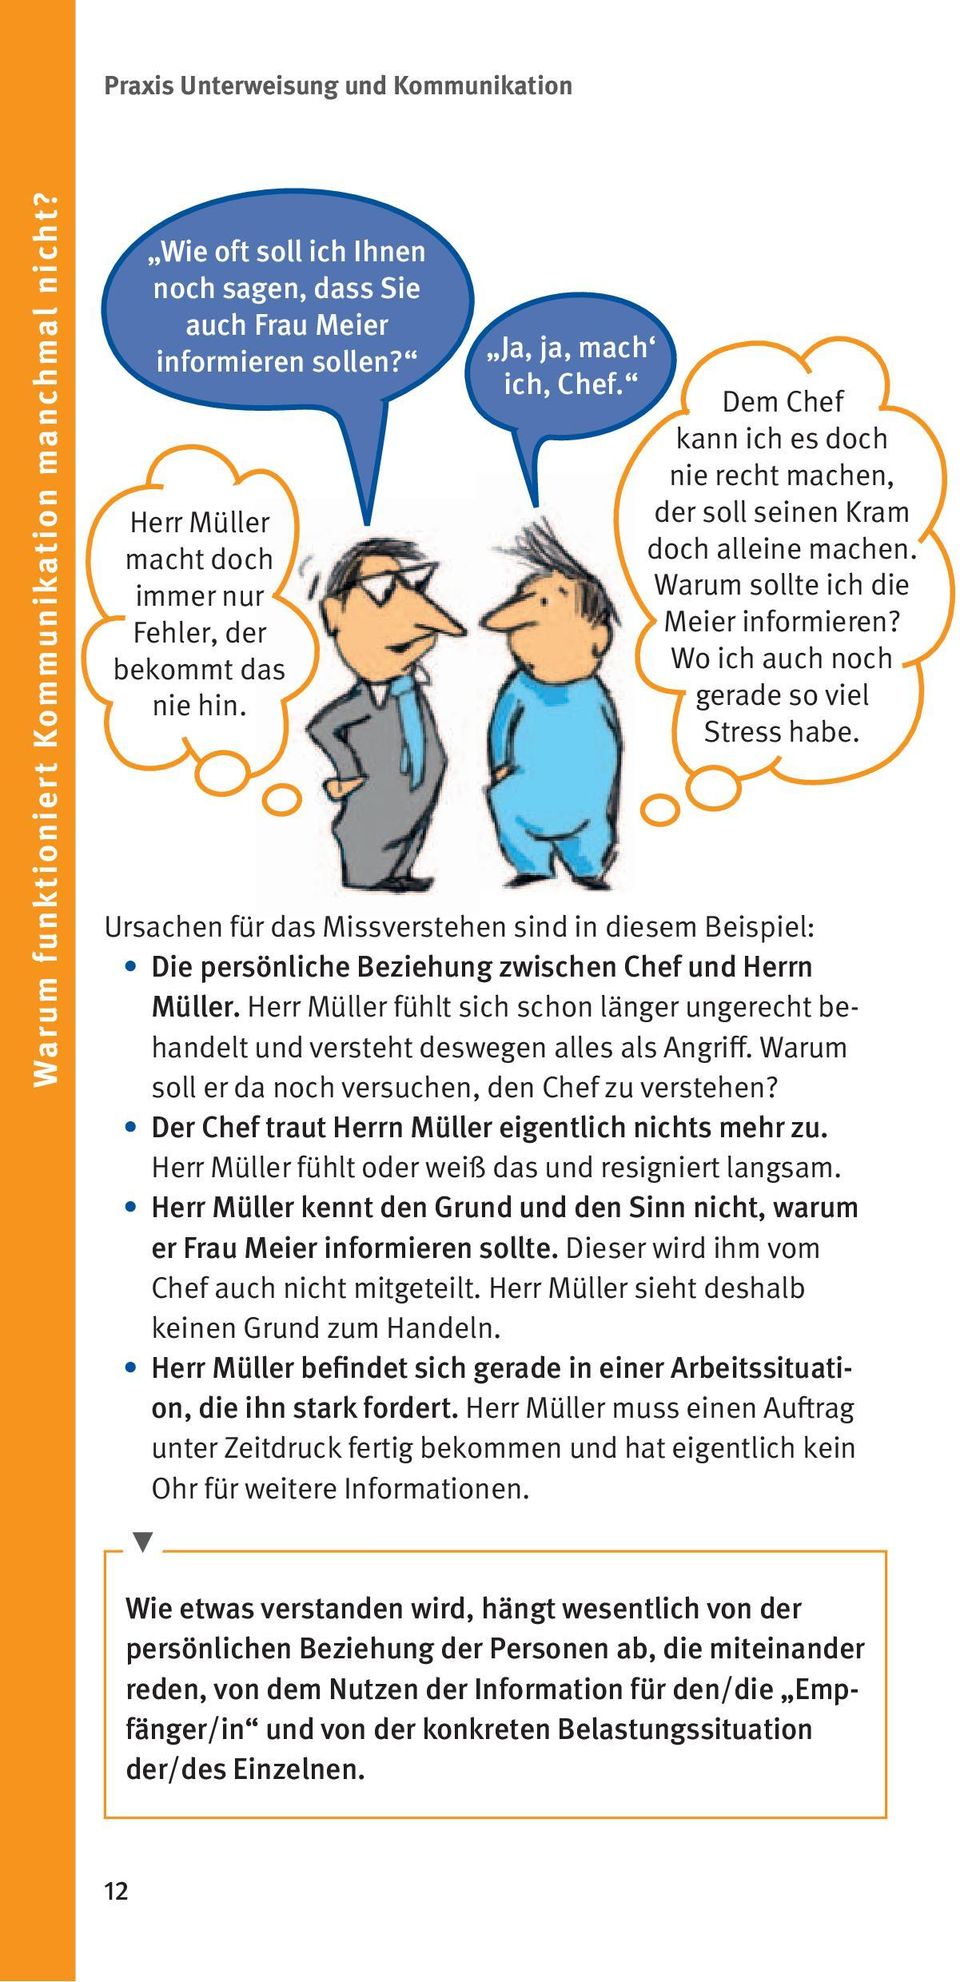 Ursachen für das Missverstehen sind in diesem Beispiel: Die persönliche Beziehung zwischen Chef und Herrn Müller.